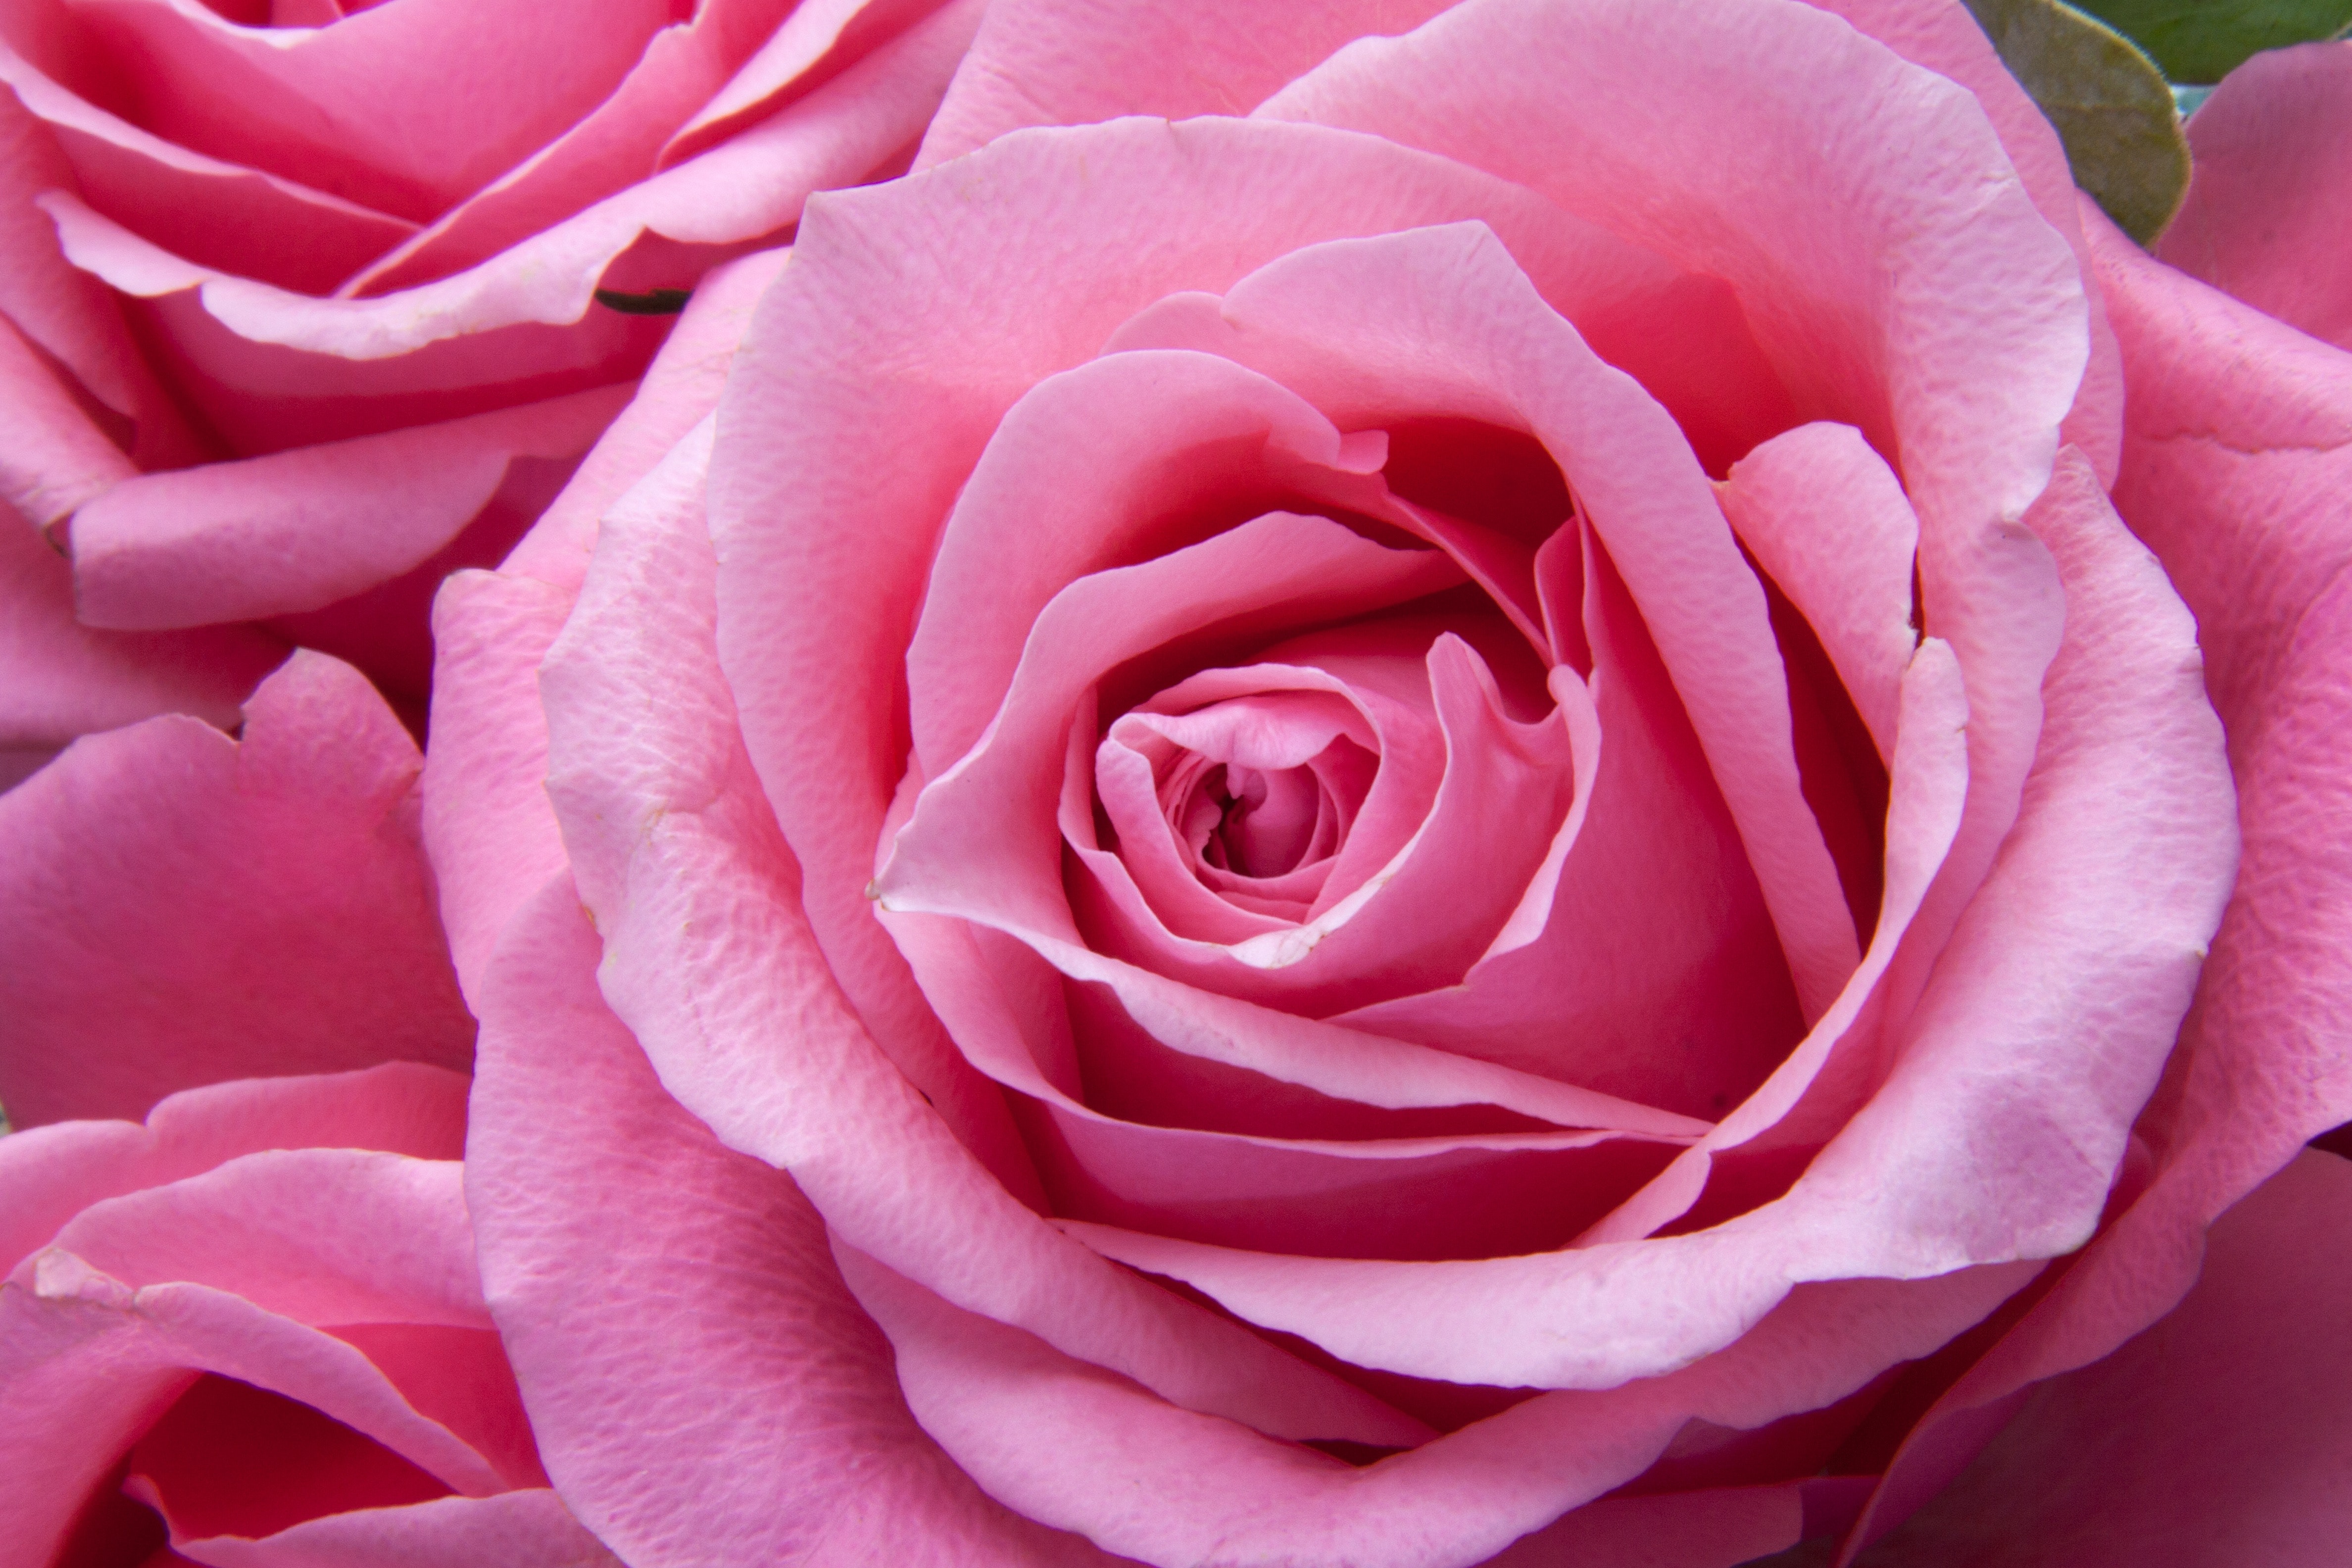 rose wallpaper,flower,rose,garden roses,flowering plant,petal